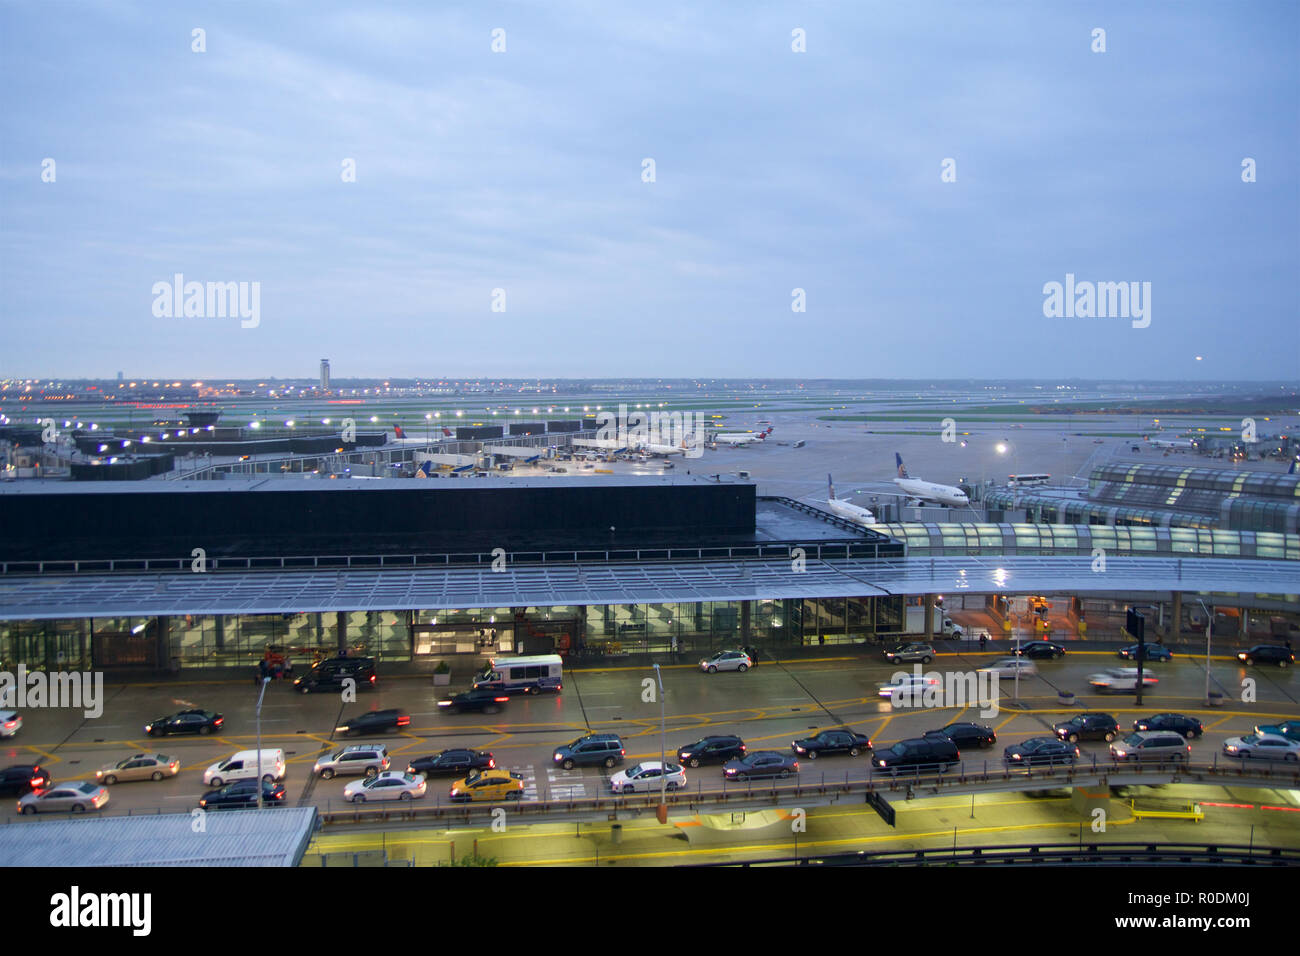 CHICAGO, ILLINOIS, UNITED STATES - Mai 11th, 2018 : Plusieurs avions à la porte à l'aéroport international O'Hare de Chicago en début de matinée avec traffic jam Banque D'Images